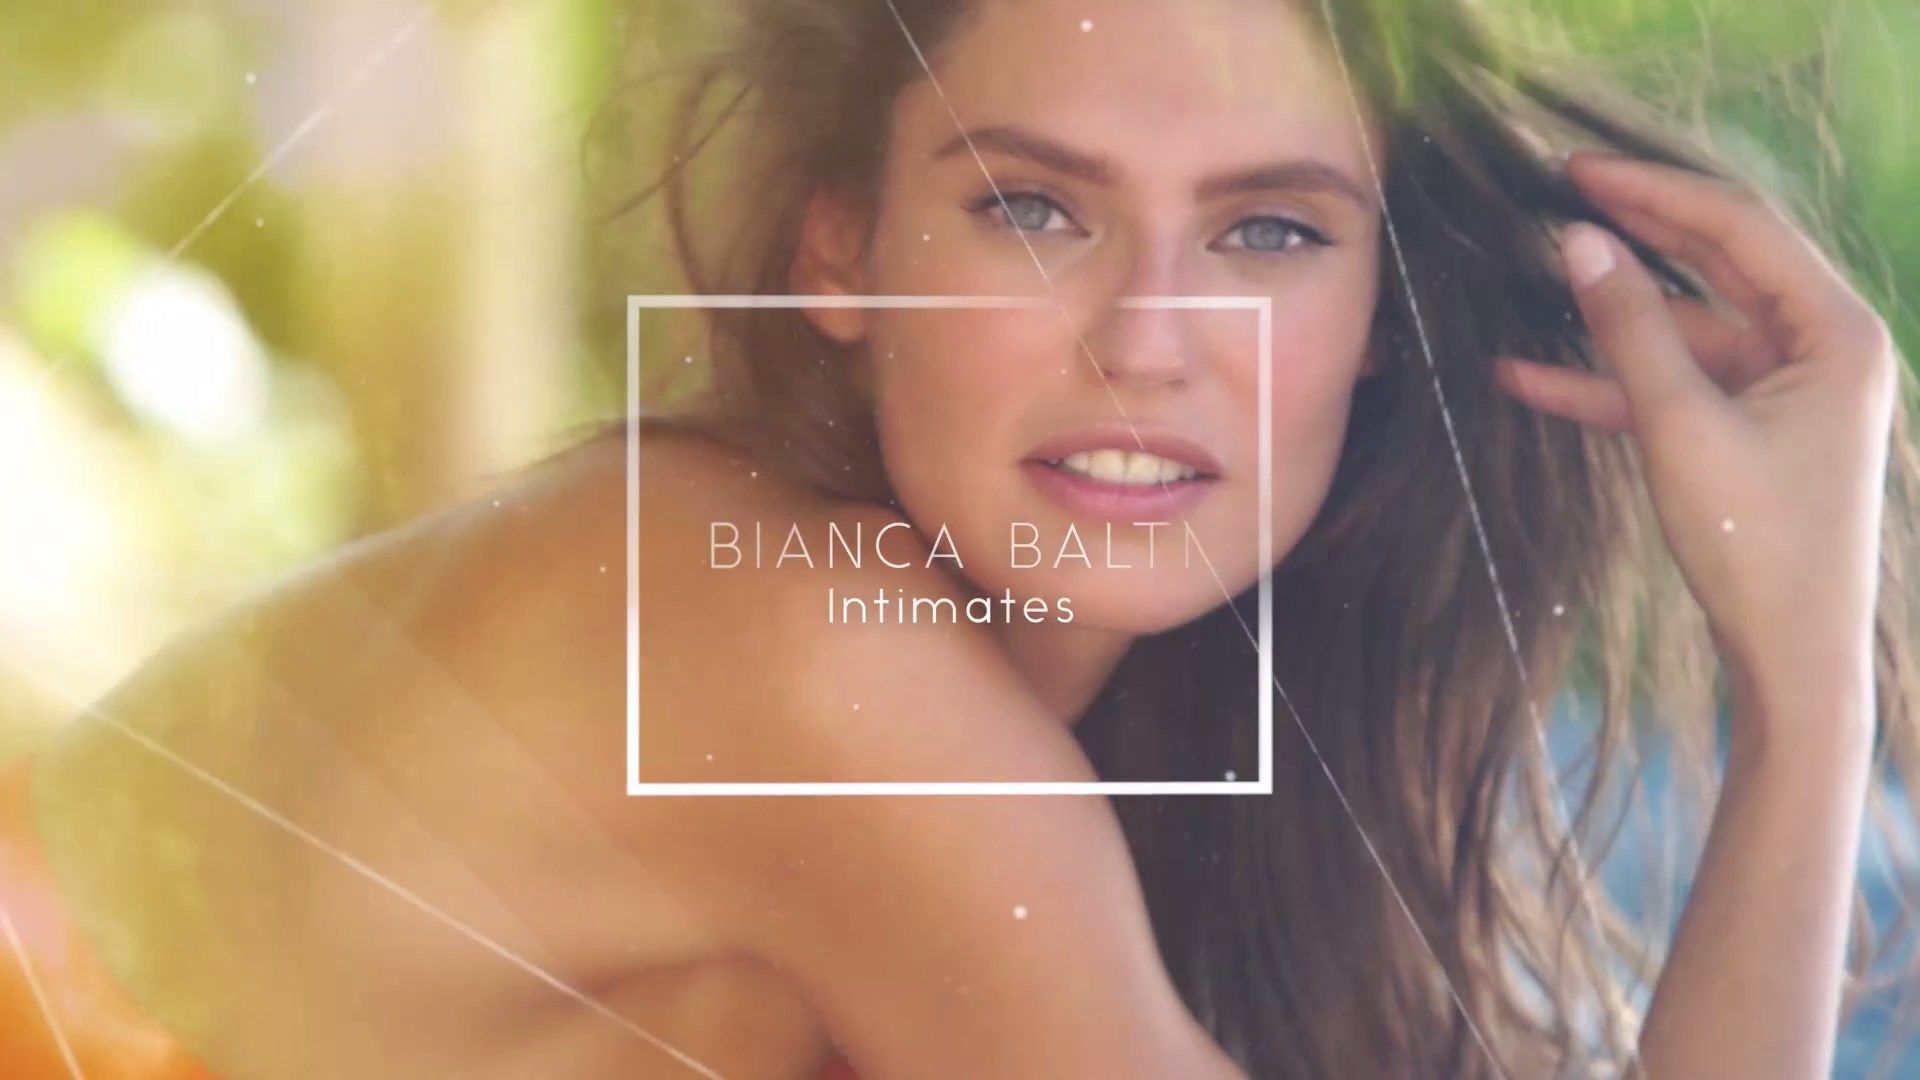 Bianca Balti nude photos